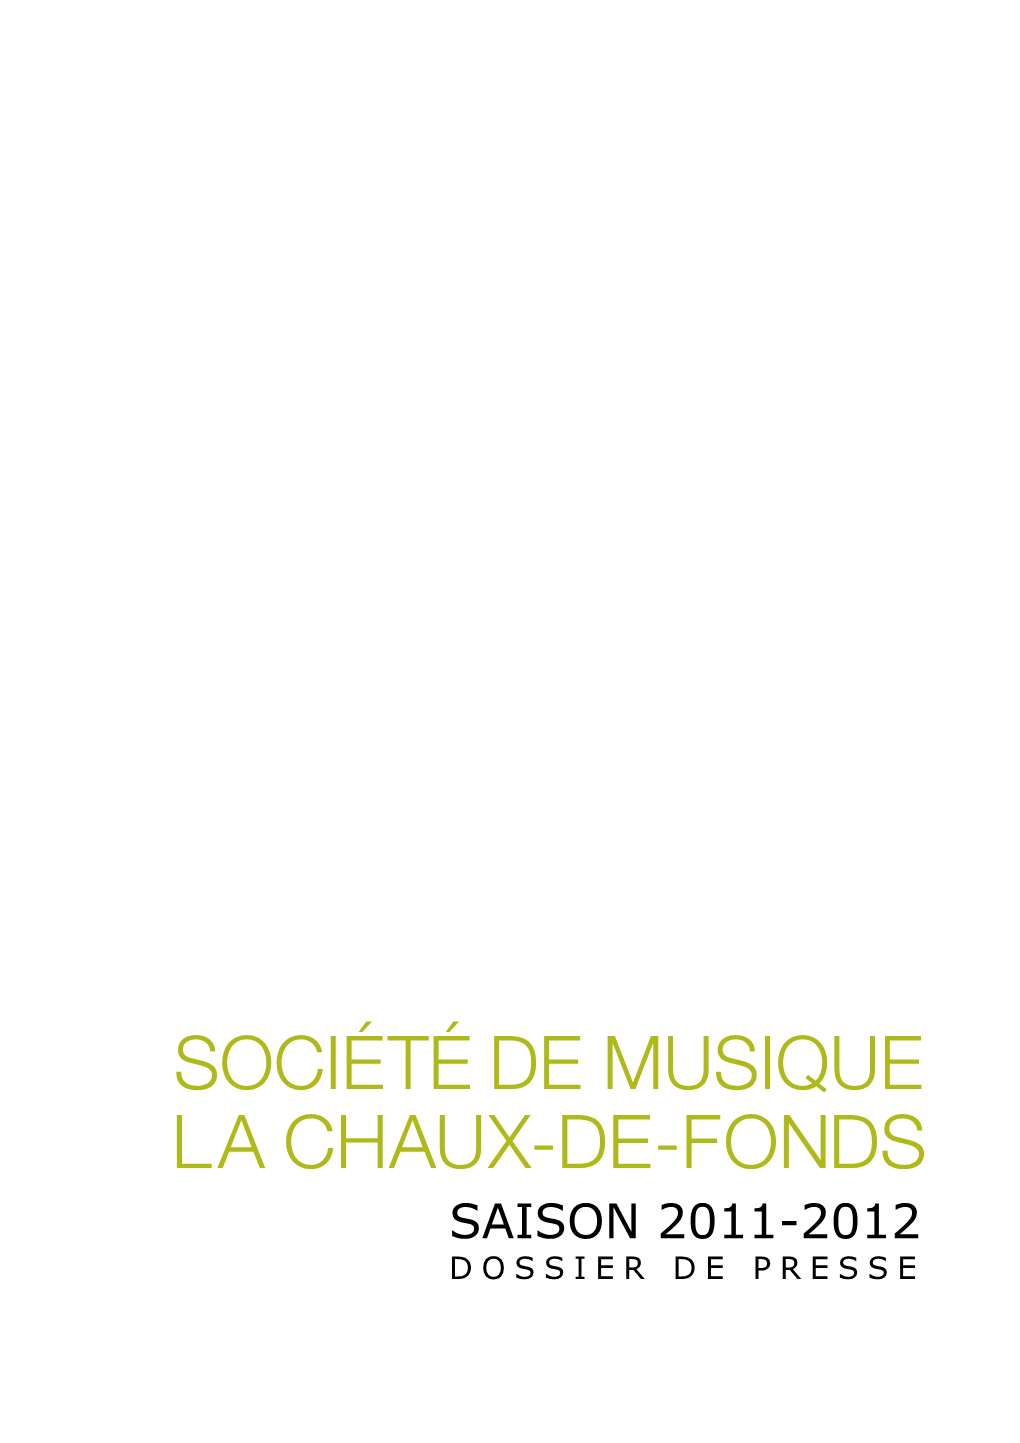 SDM 2011-2012 Dossier De Presse 13.09.2011